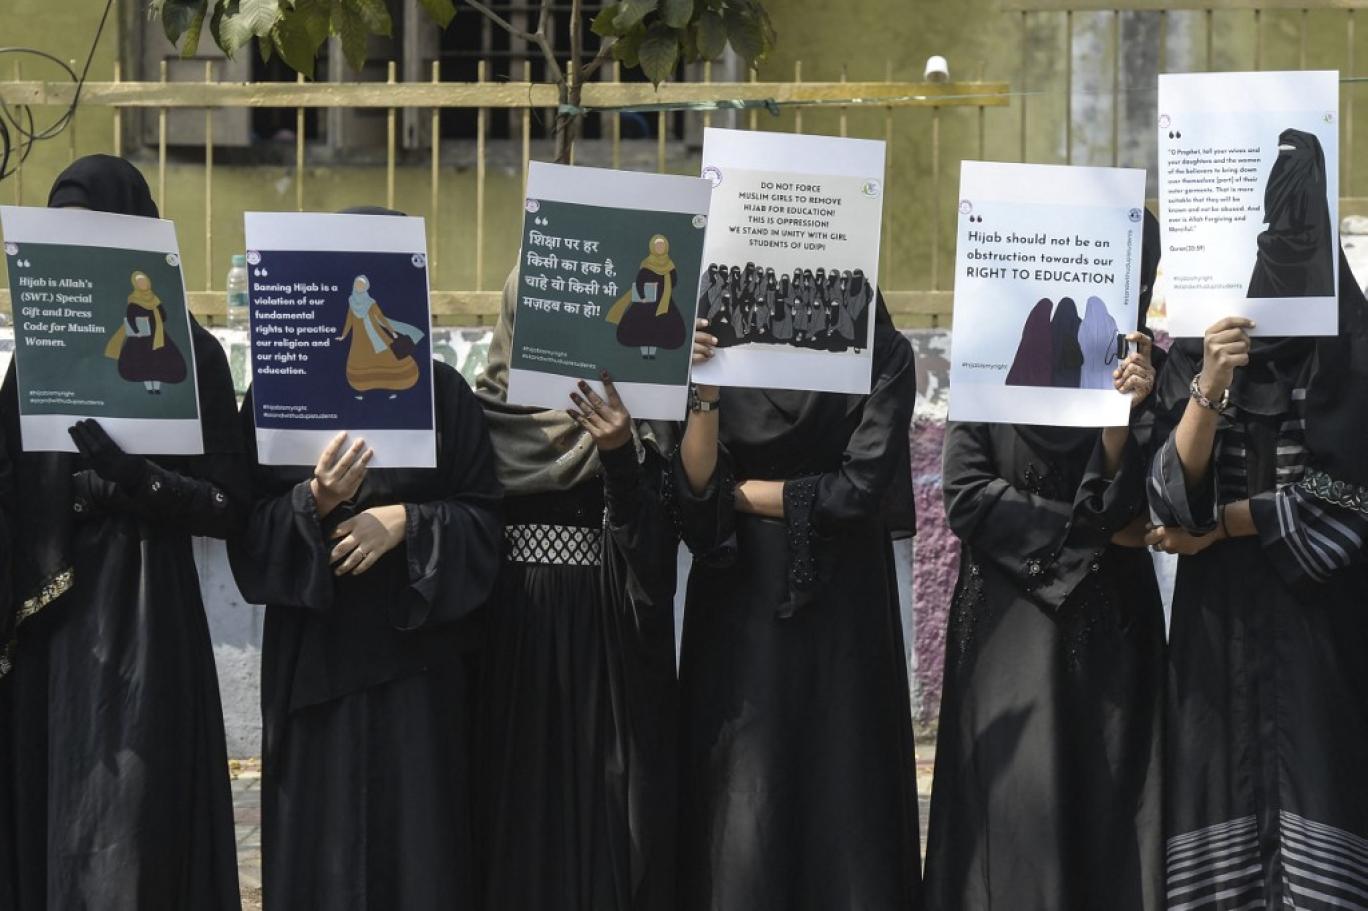 اتر پردیش کے کالج میں حجاب پہننے والی مسلمان طالبات کے داخلے پر پابندی